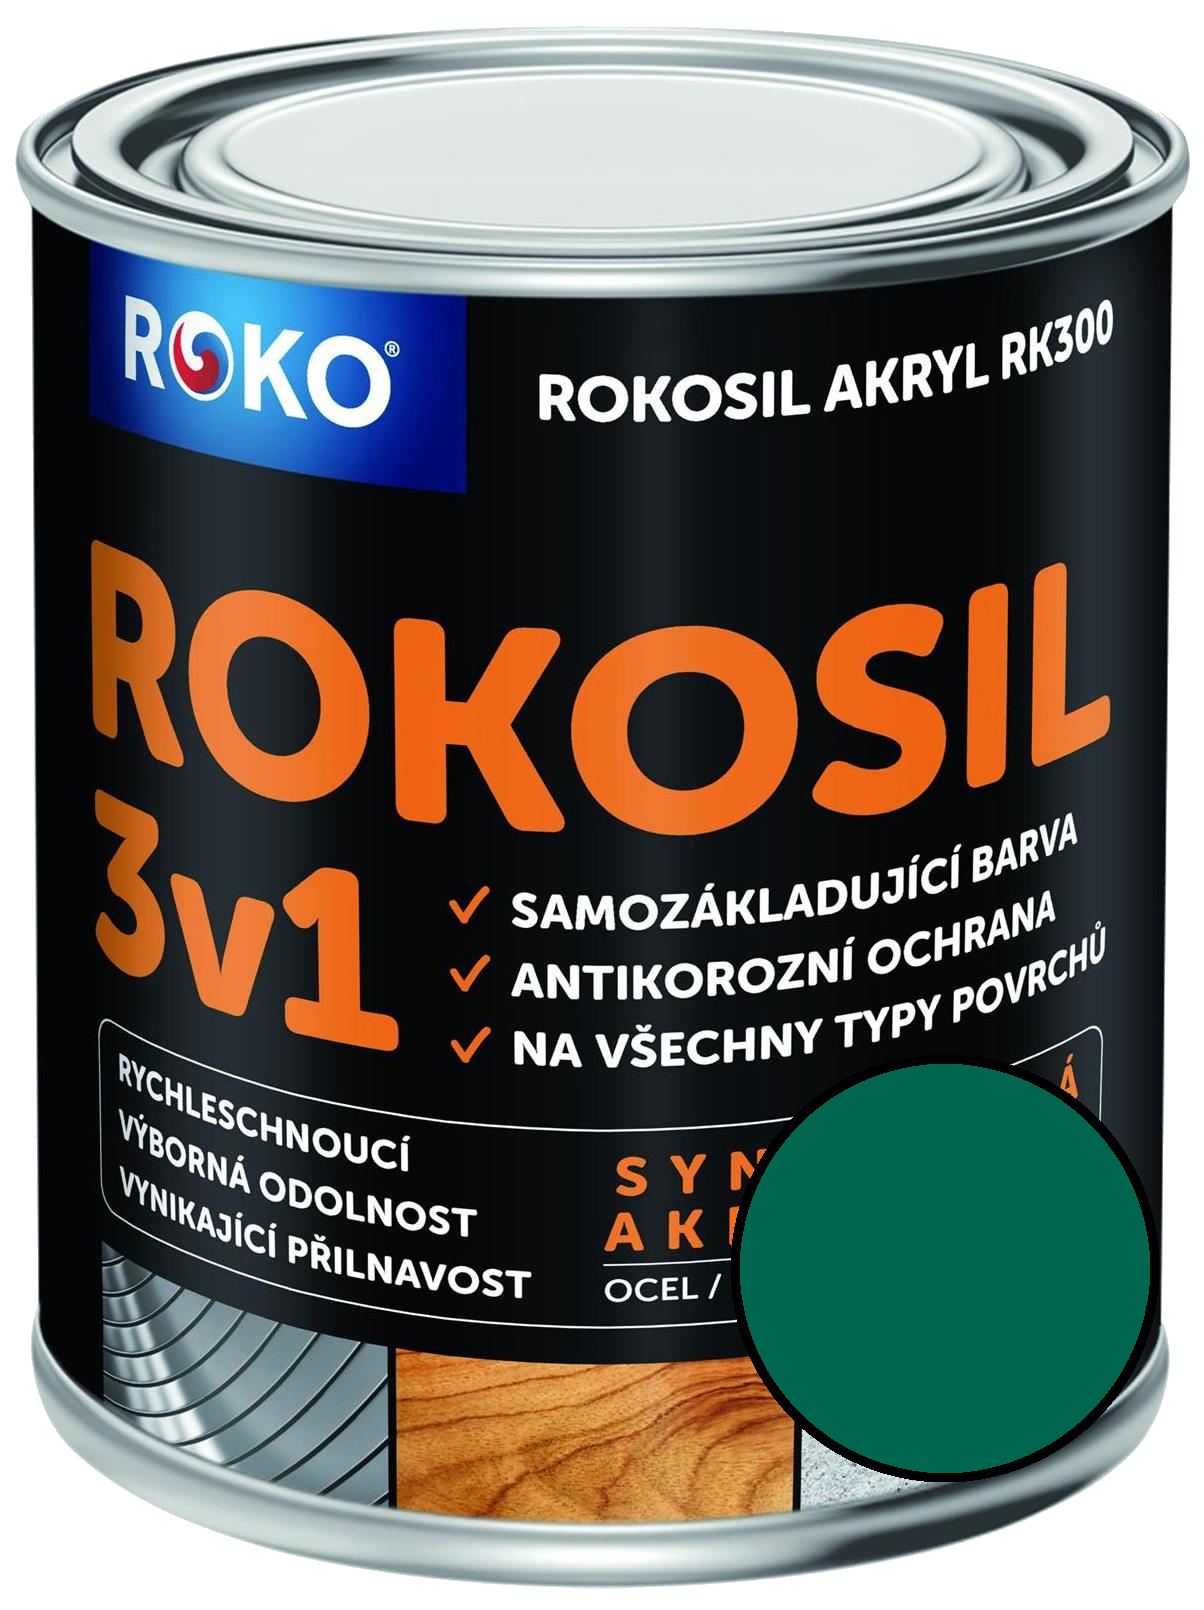 Barva samozákladující Rokosil akryl 3v1 RK 300 5400 zelená tmavá, 3 l